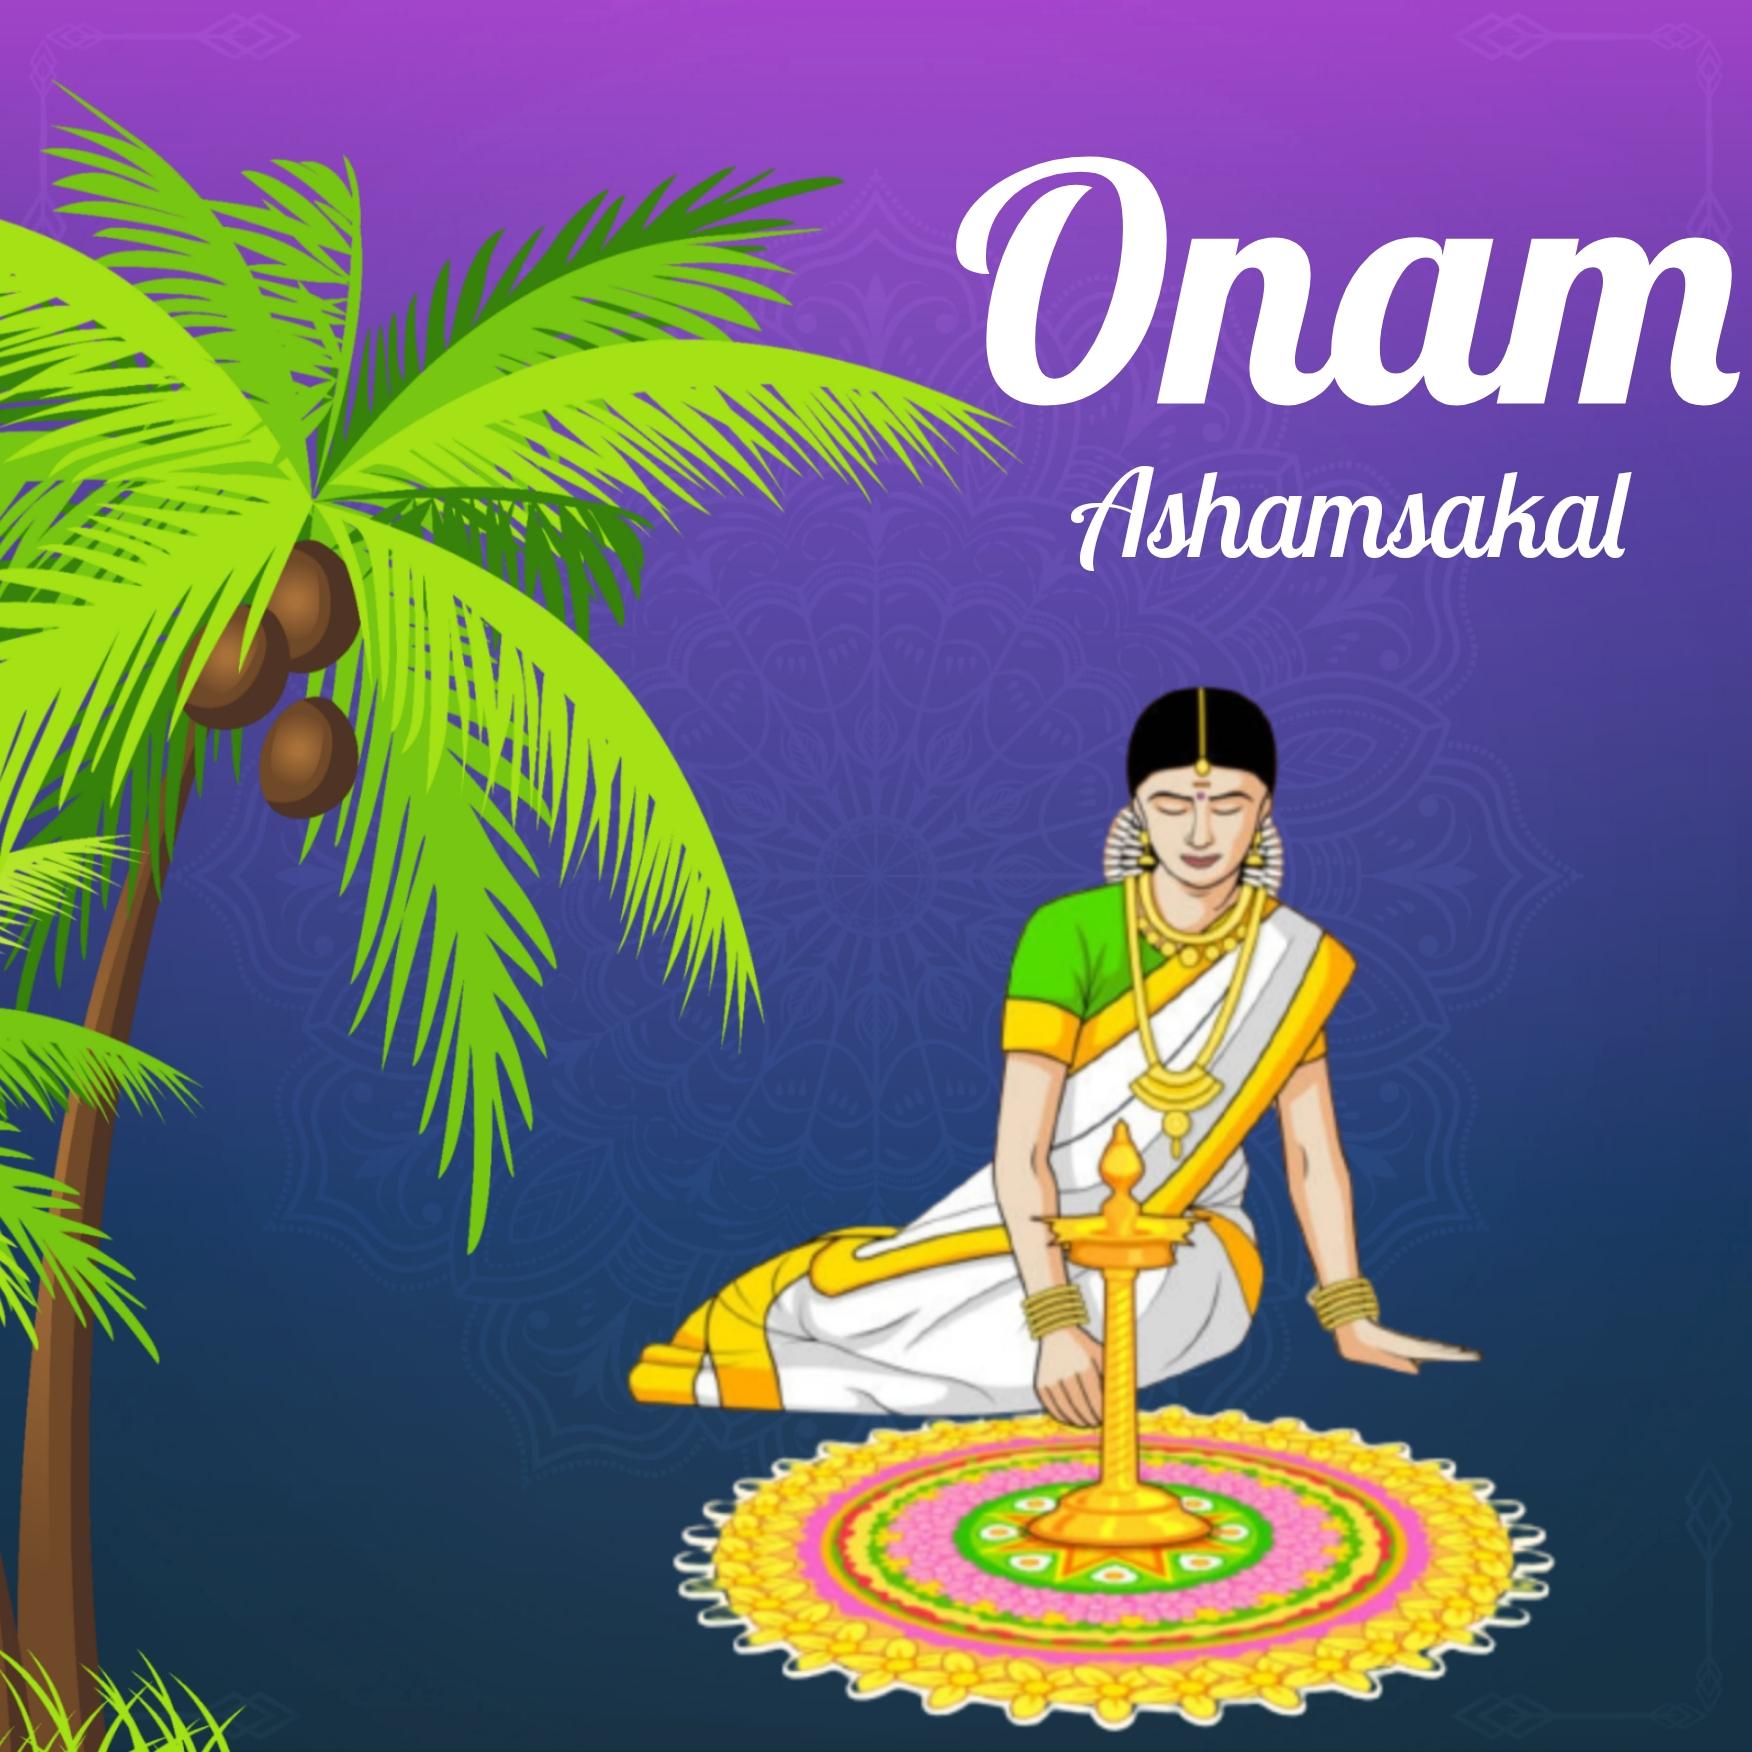 Onam Ashamsakal 2022 Images Download - ShayariMaza